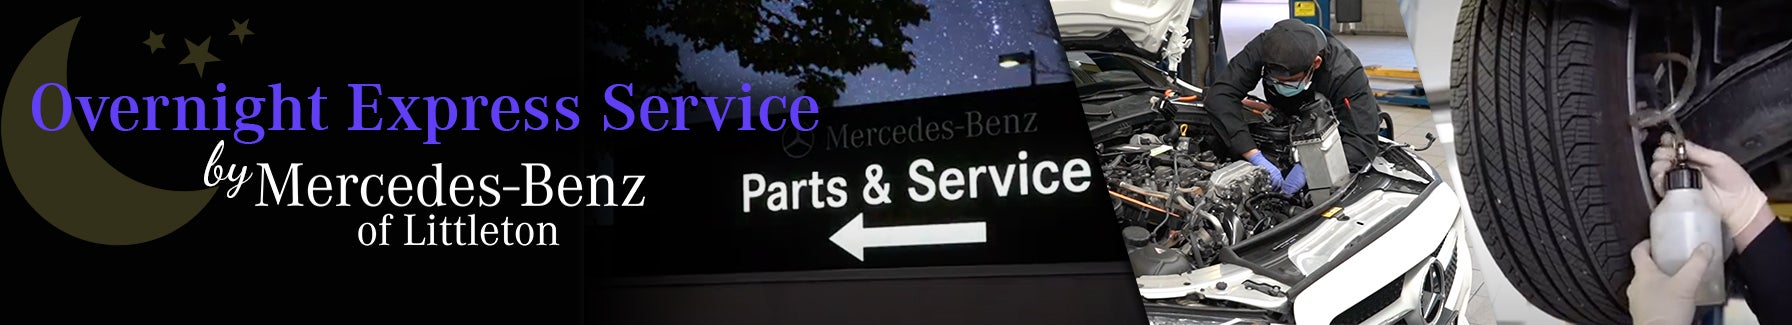 Mercedes-Benz Overnight Express Service